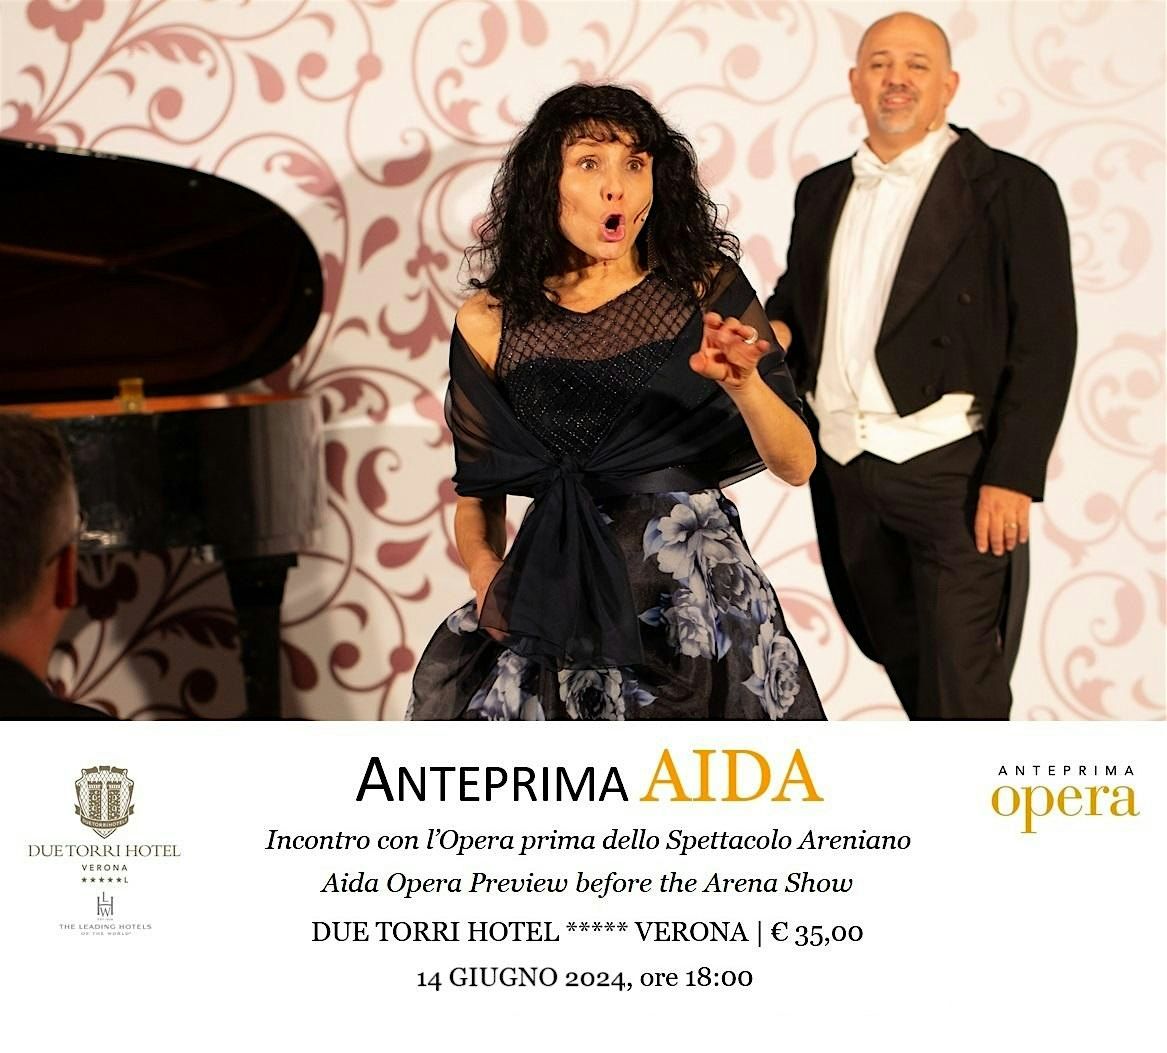 Anteprima AIDA - Guida all'Ascolto dell'Opera in programma in Arena la sera